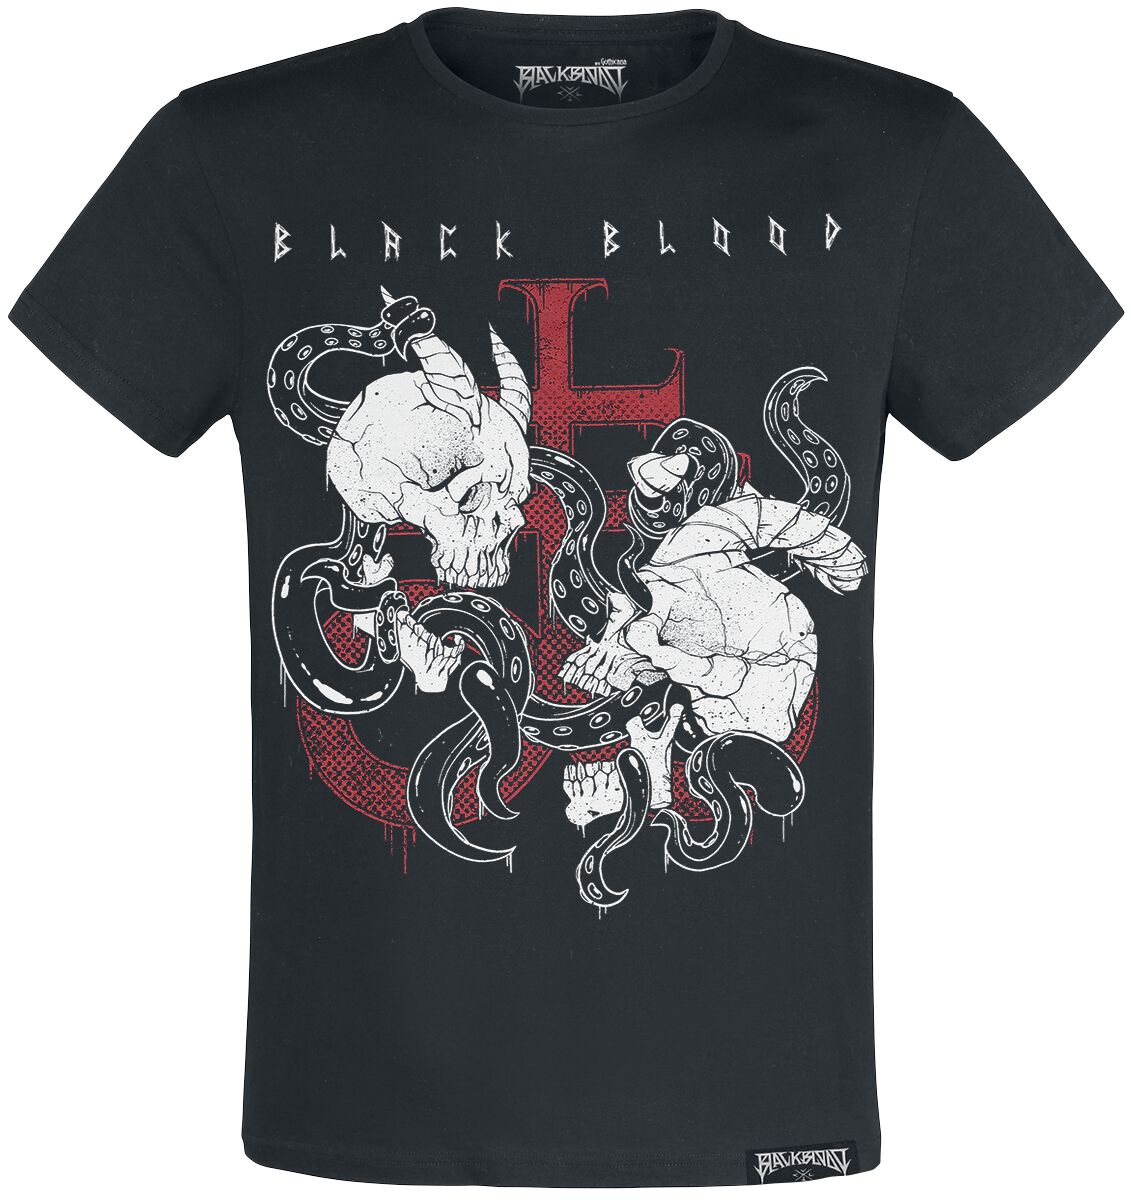 Black Blood by Gothicana T-Shirt - T-Shirt with Demon Skull Print - S bis XL - für Männer - Größe M - schwarz